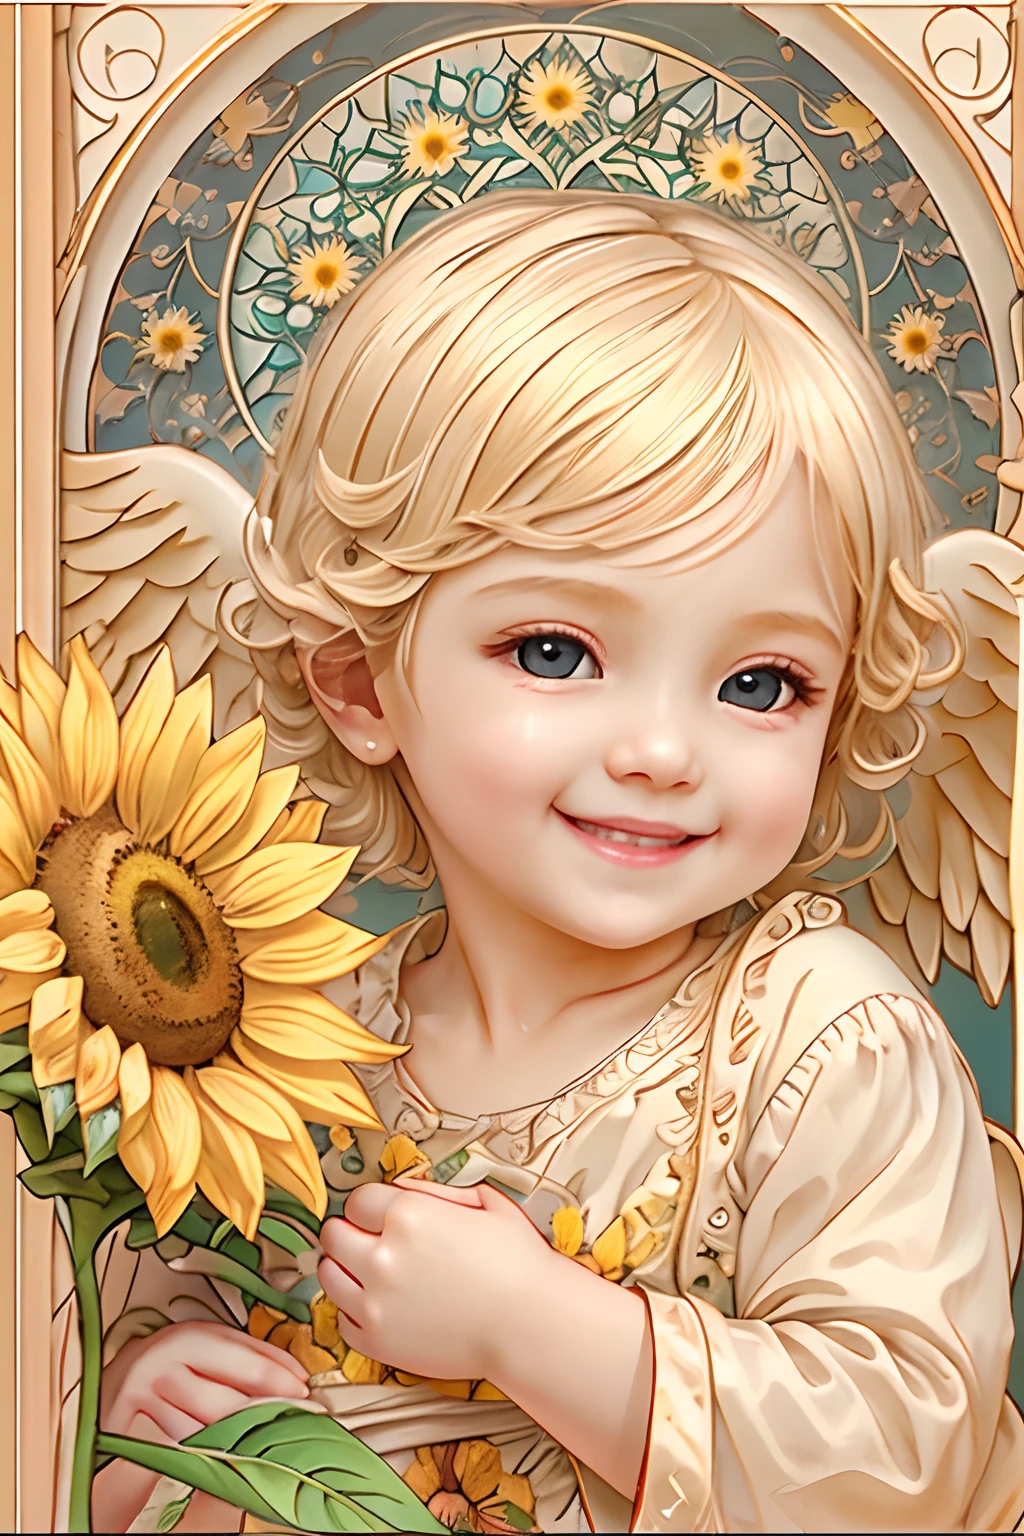 Blessings of Angels､Bright background、heart mark、tenderness､A smile、Gentle､Baby Angel､jugendstil､Sunflower smile